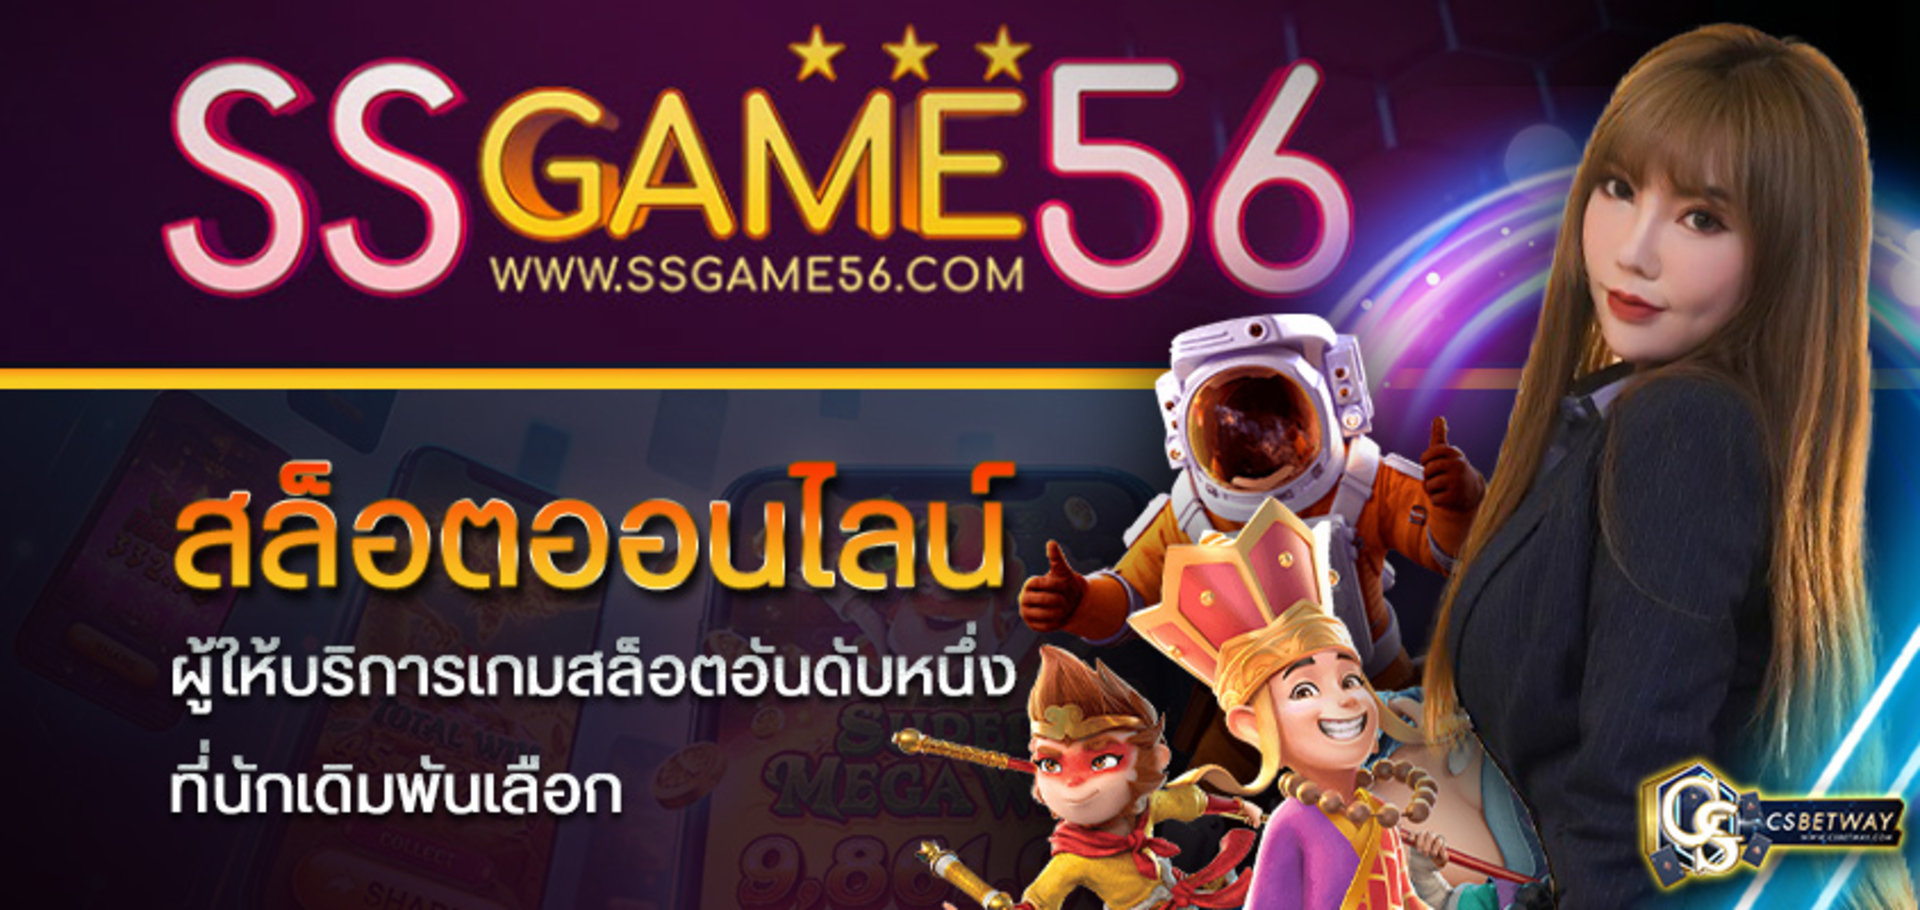 SSGame56 เกมสล็อตออนไลน์ เกมออนไลน์ได้เงิน ผู้ให้บริการเกมสล็อตอันดับหนึ่ง